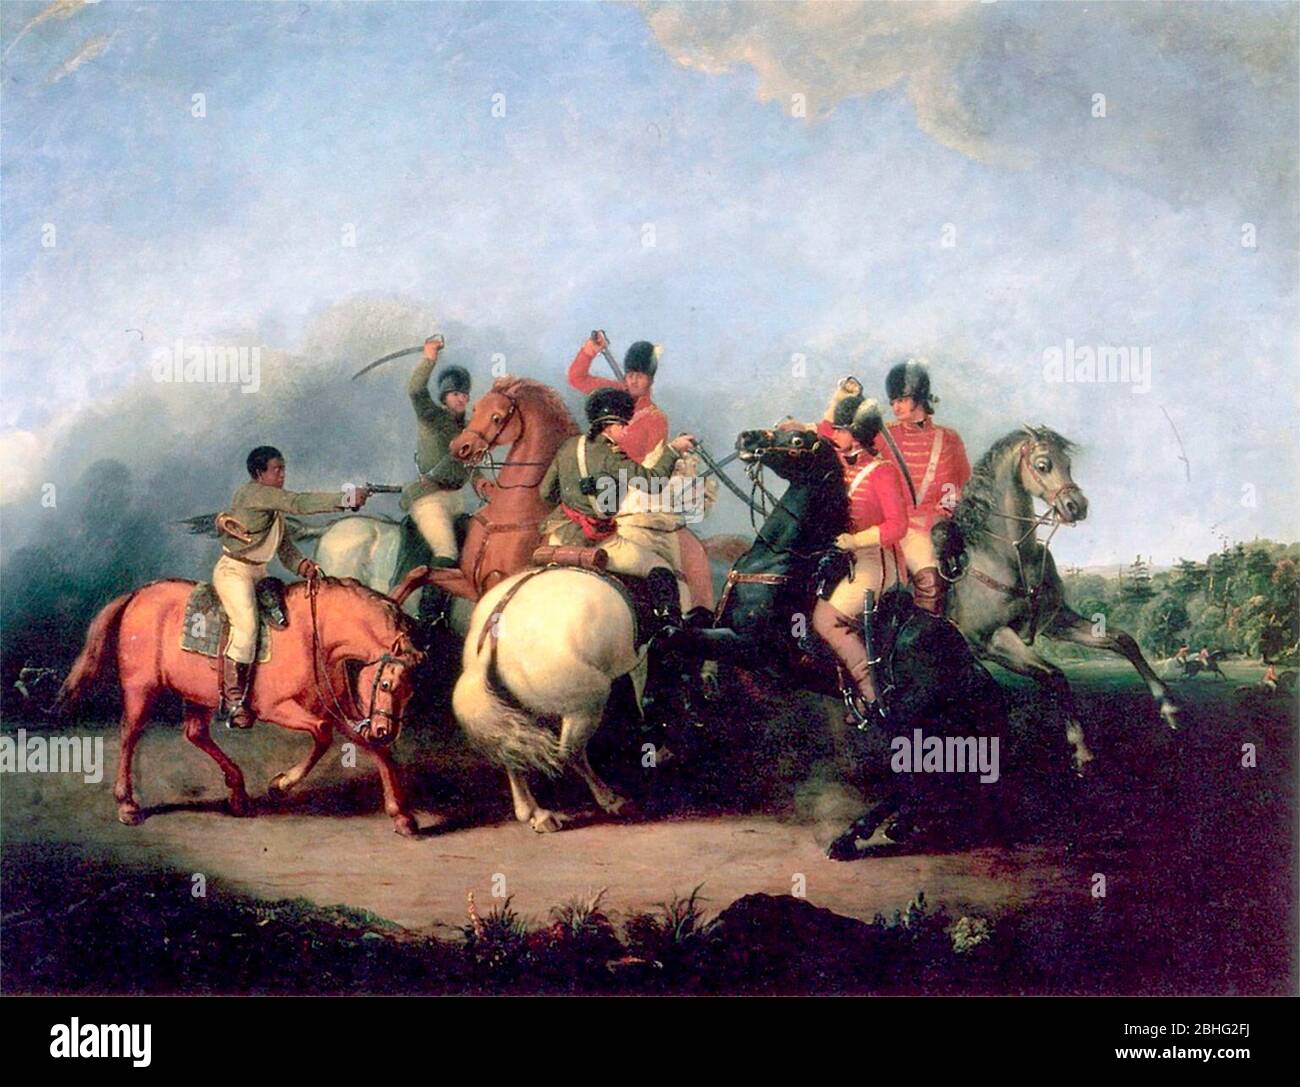 Die Schlacht von Cowpens, gemalt von William Ranney im Jahre 1845. Die Szene zeigt einen namenlosen schwarzen Soldaten (links), der seine Pistole abfeuert und das Leben von Colonel William Washington rettet Stockfoto